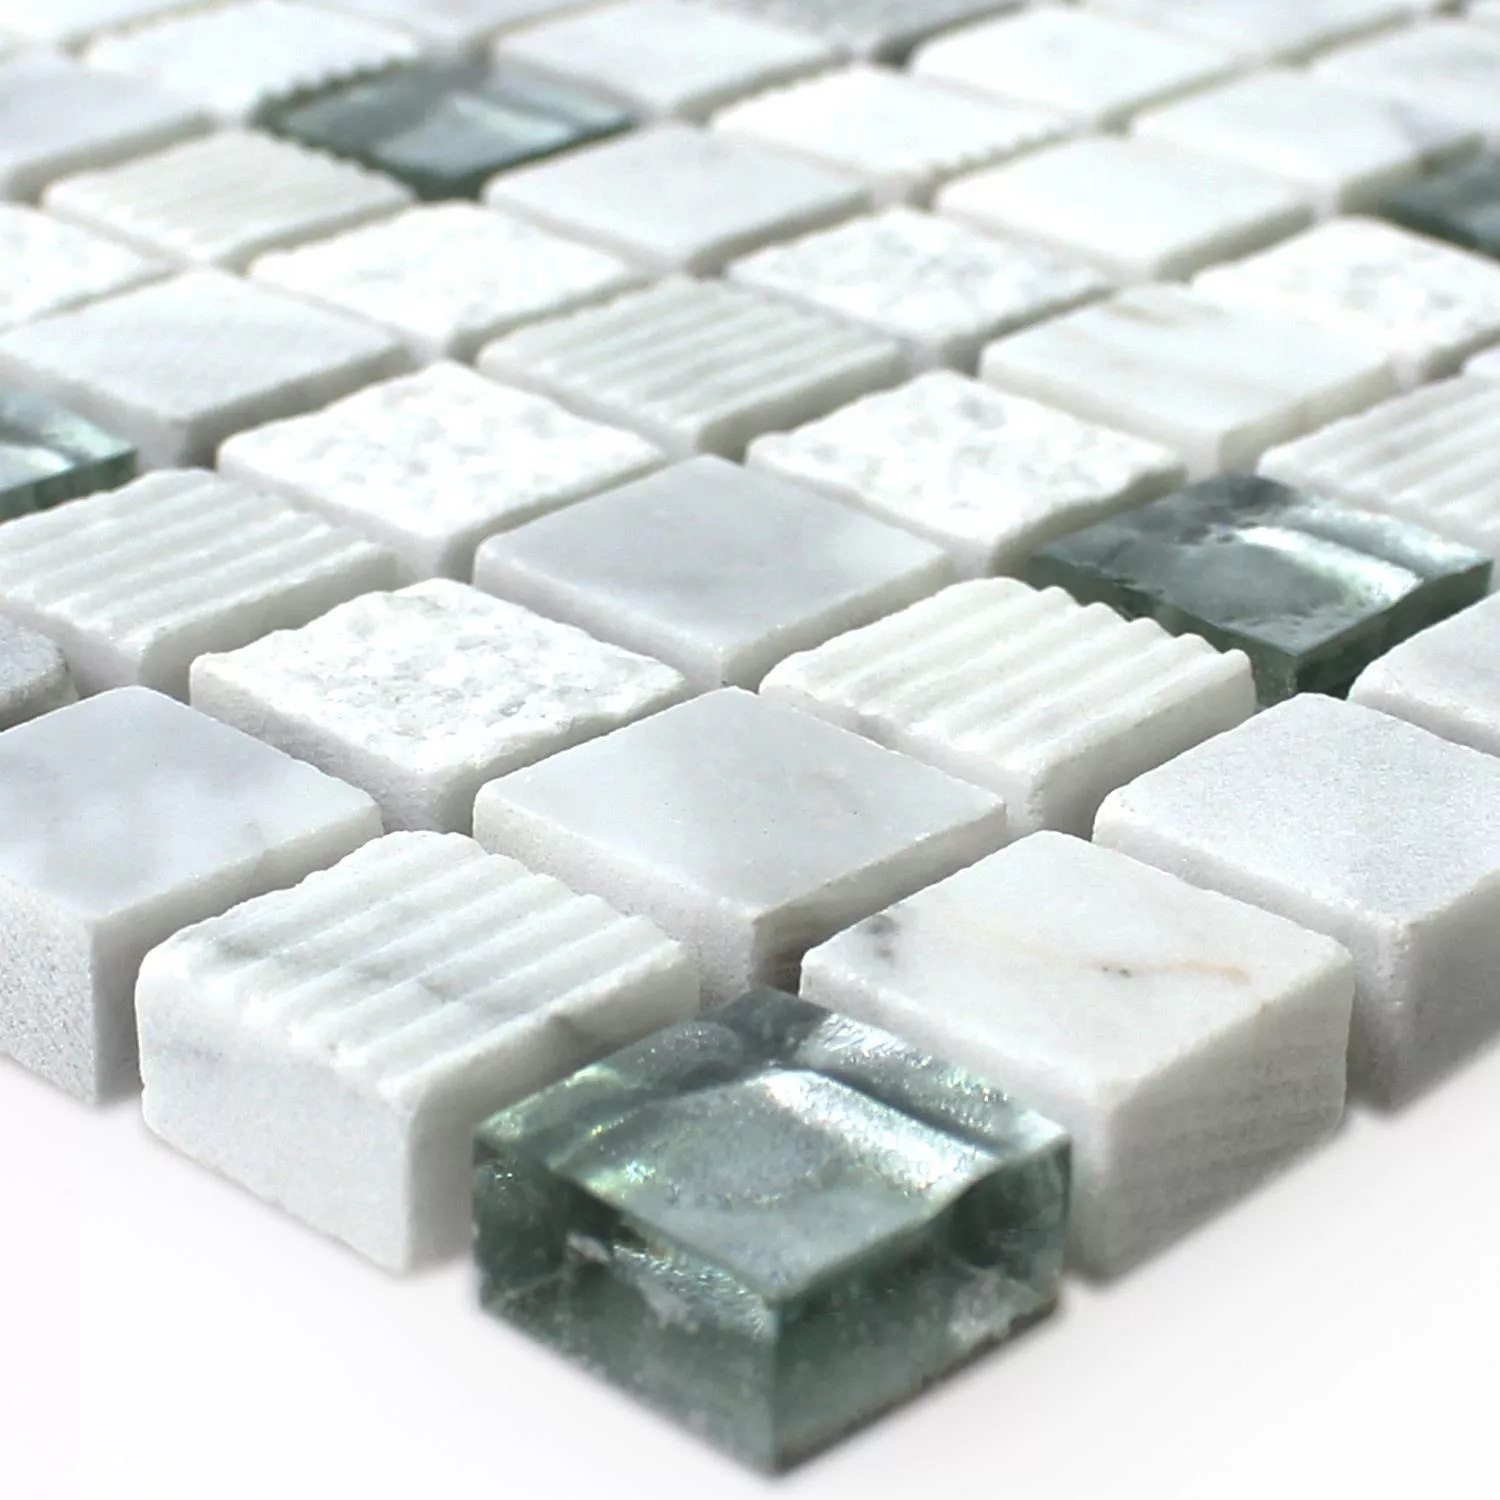 Mosaic Tiles Glass Natural Stone Yukon White